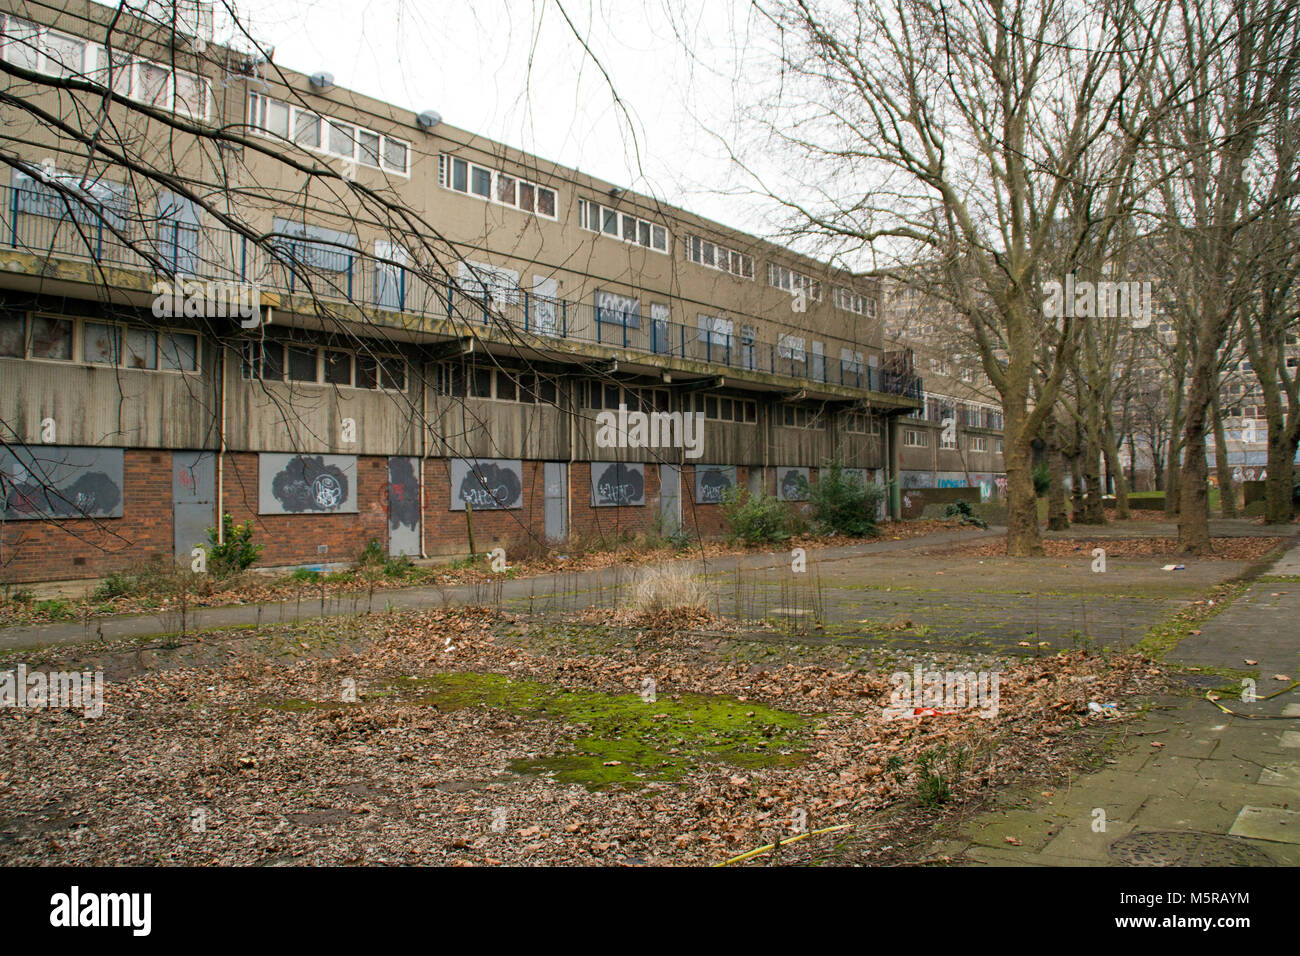 Fotografía en color de la Heygate Estate, Southwark, al sur de Londres. Fotografiado justo antes fue demolido. Londres, Inglaterra, Reino Unido. Foto de stock